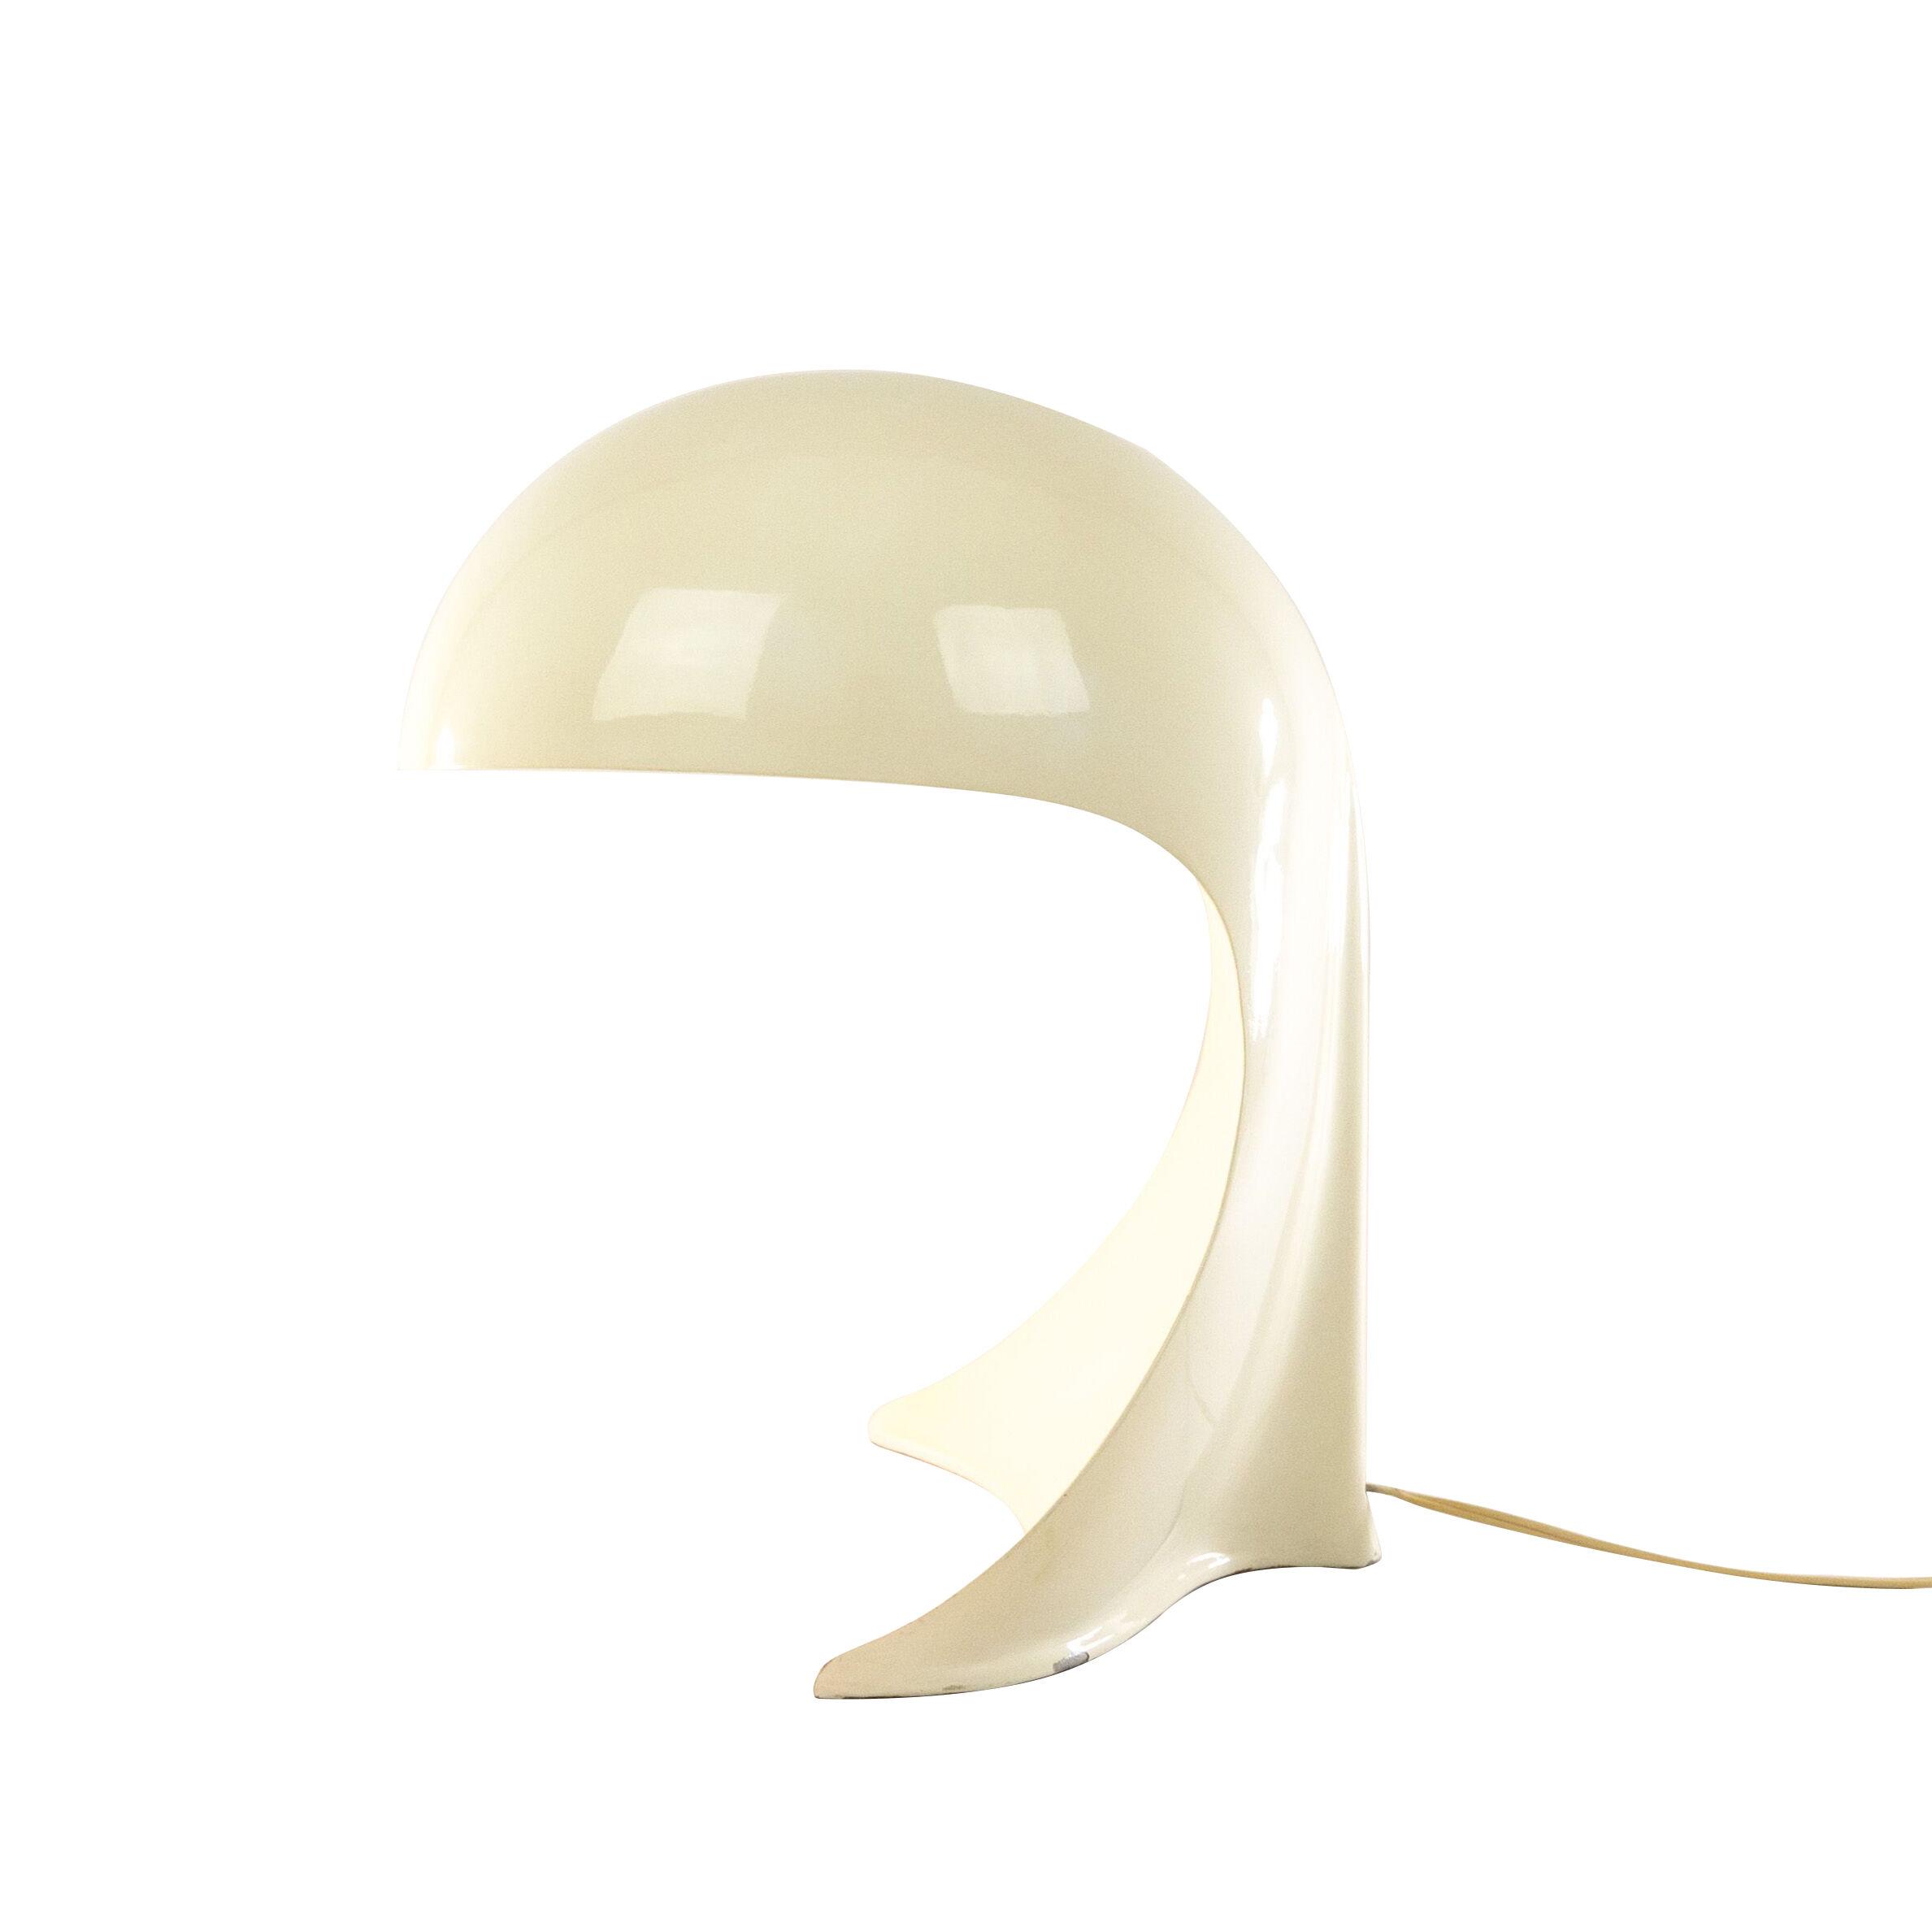 Dania table lamp by Dario Tognon and Studio Celli for Artemide, 1960s